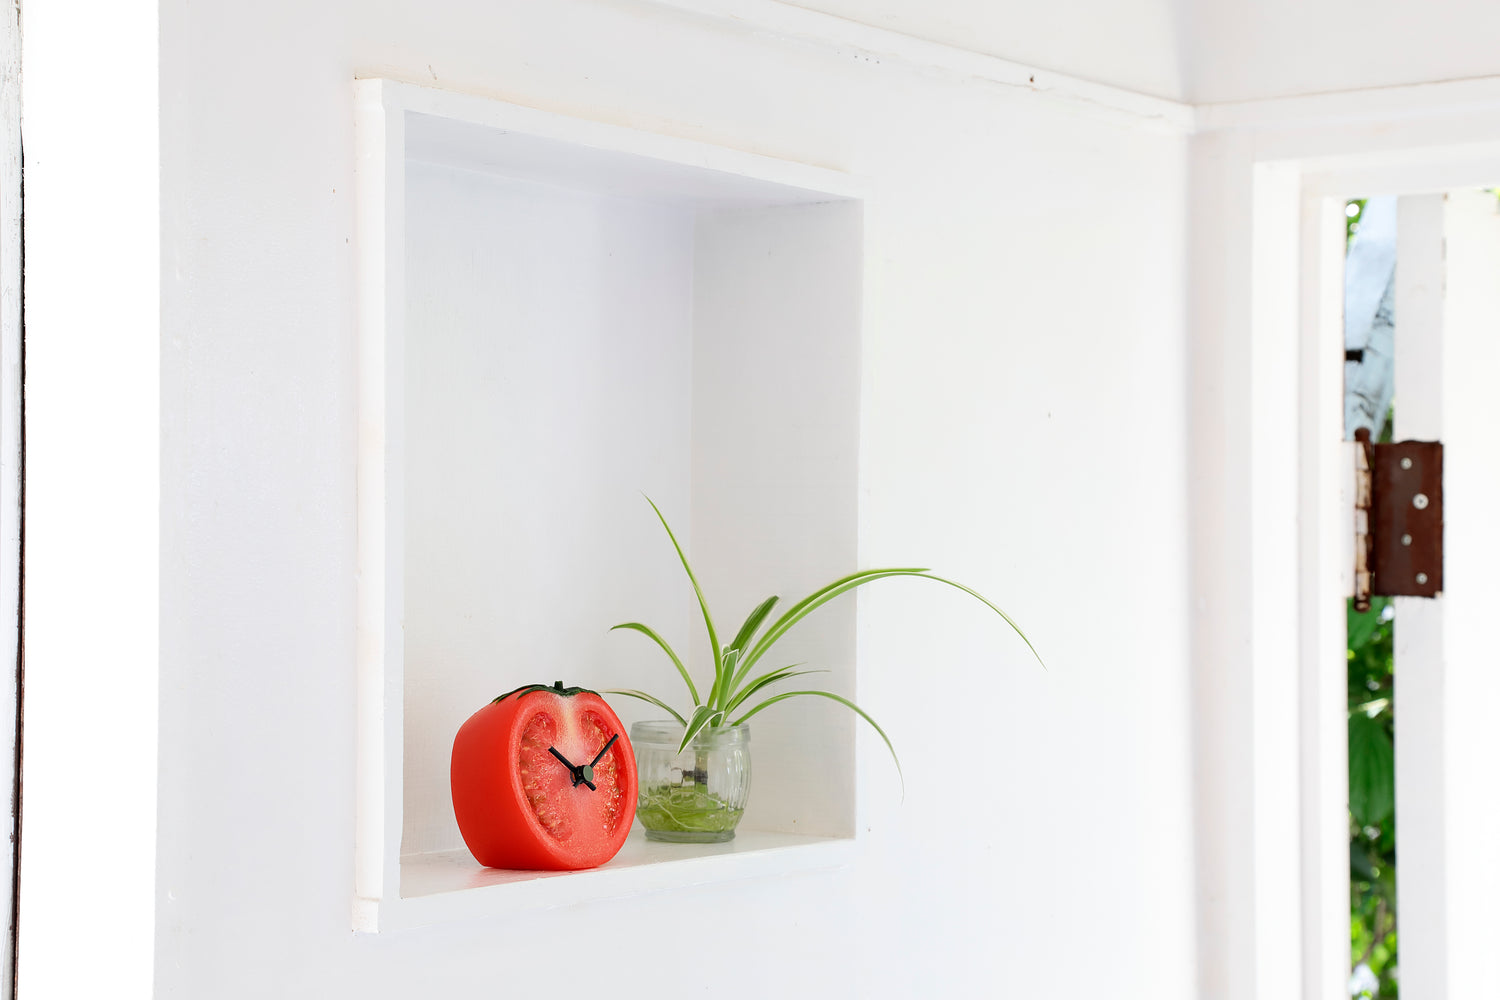 元祖食品サンプル屋「Replica Food Clock トマト」の玄関に置いたイメージ画像です。